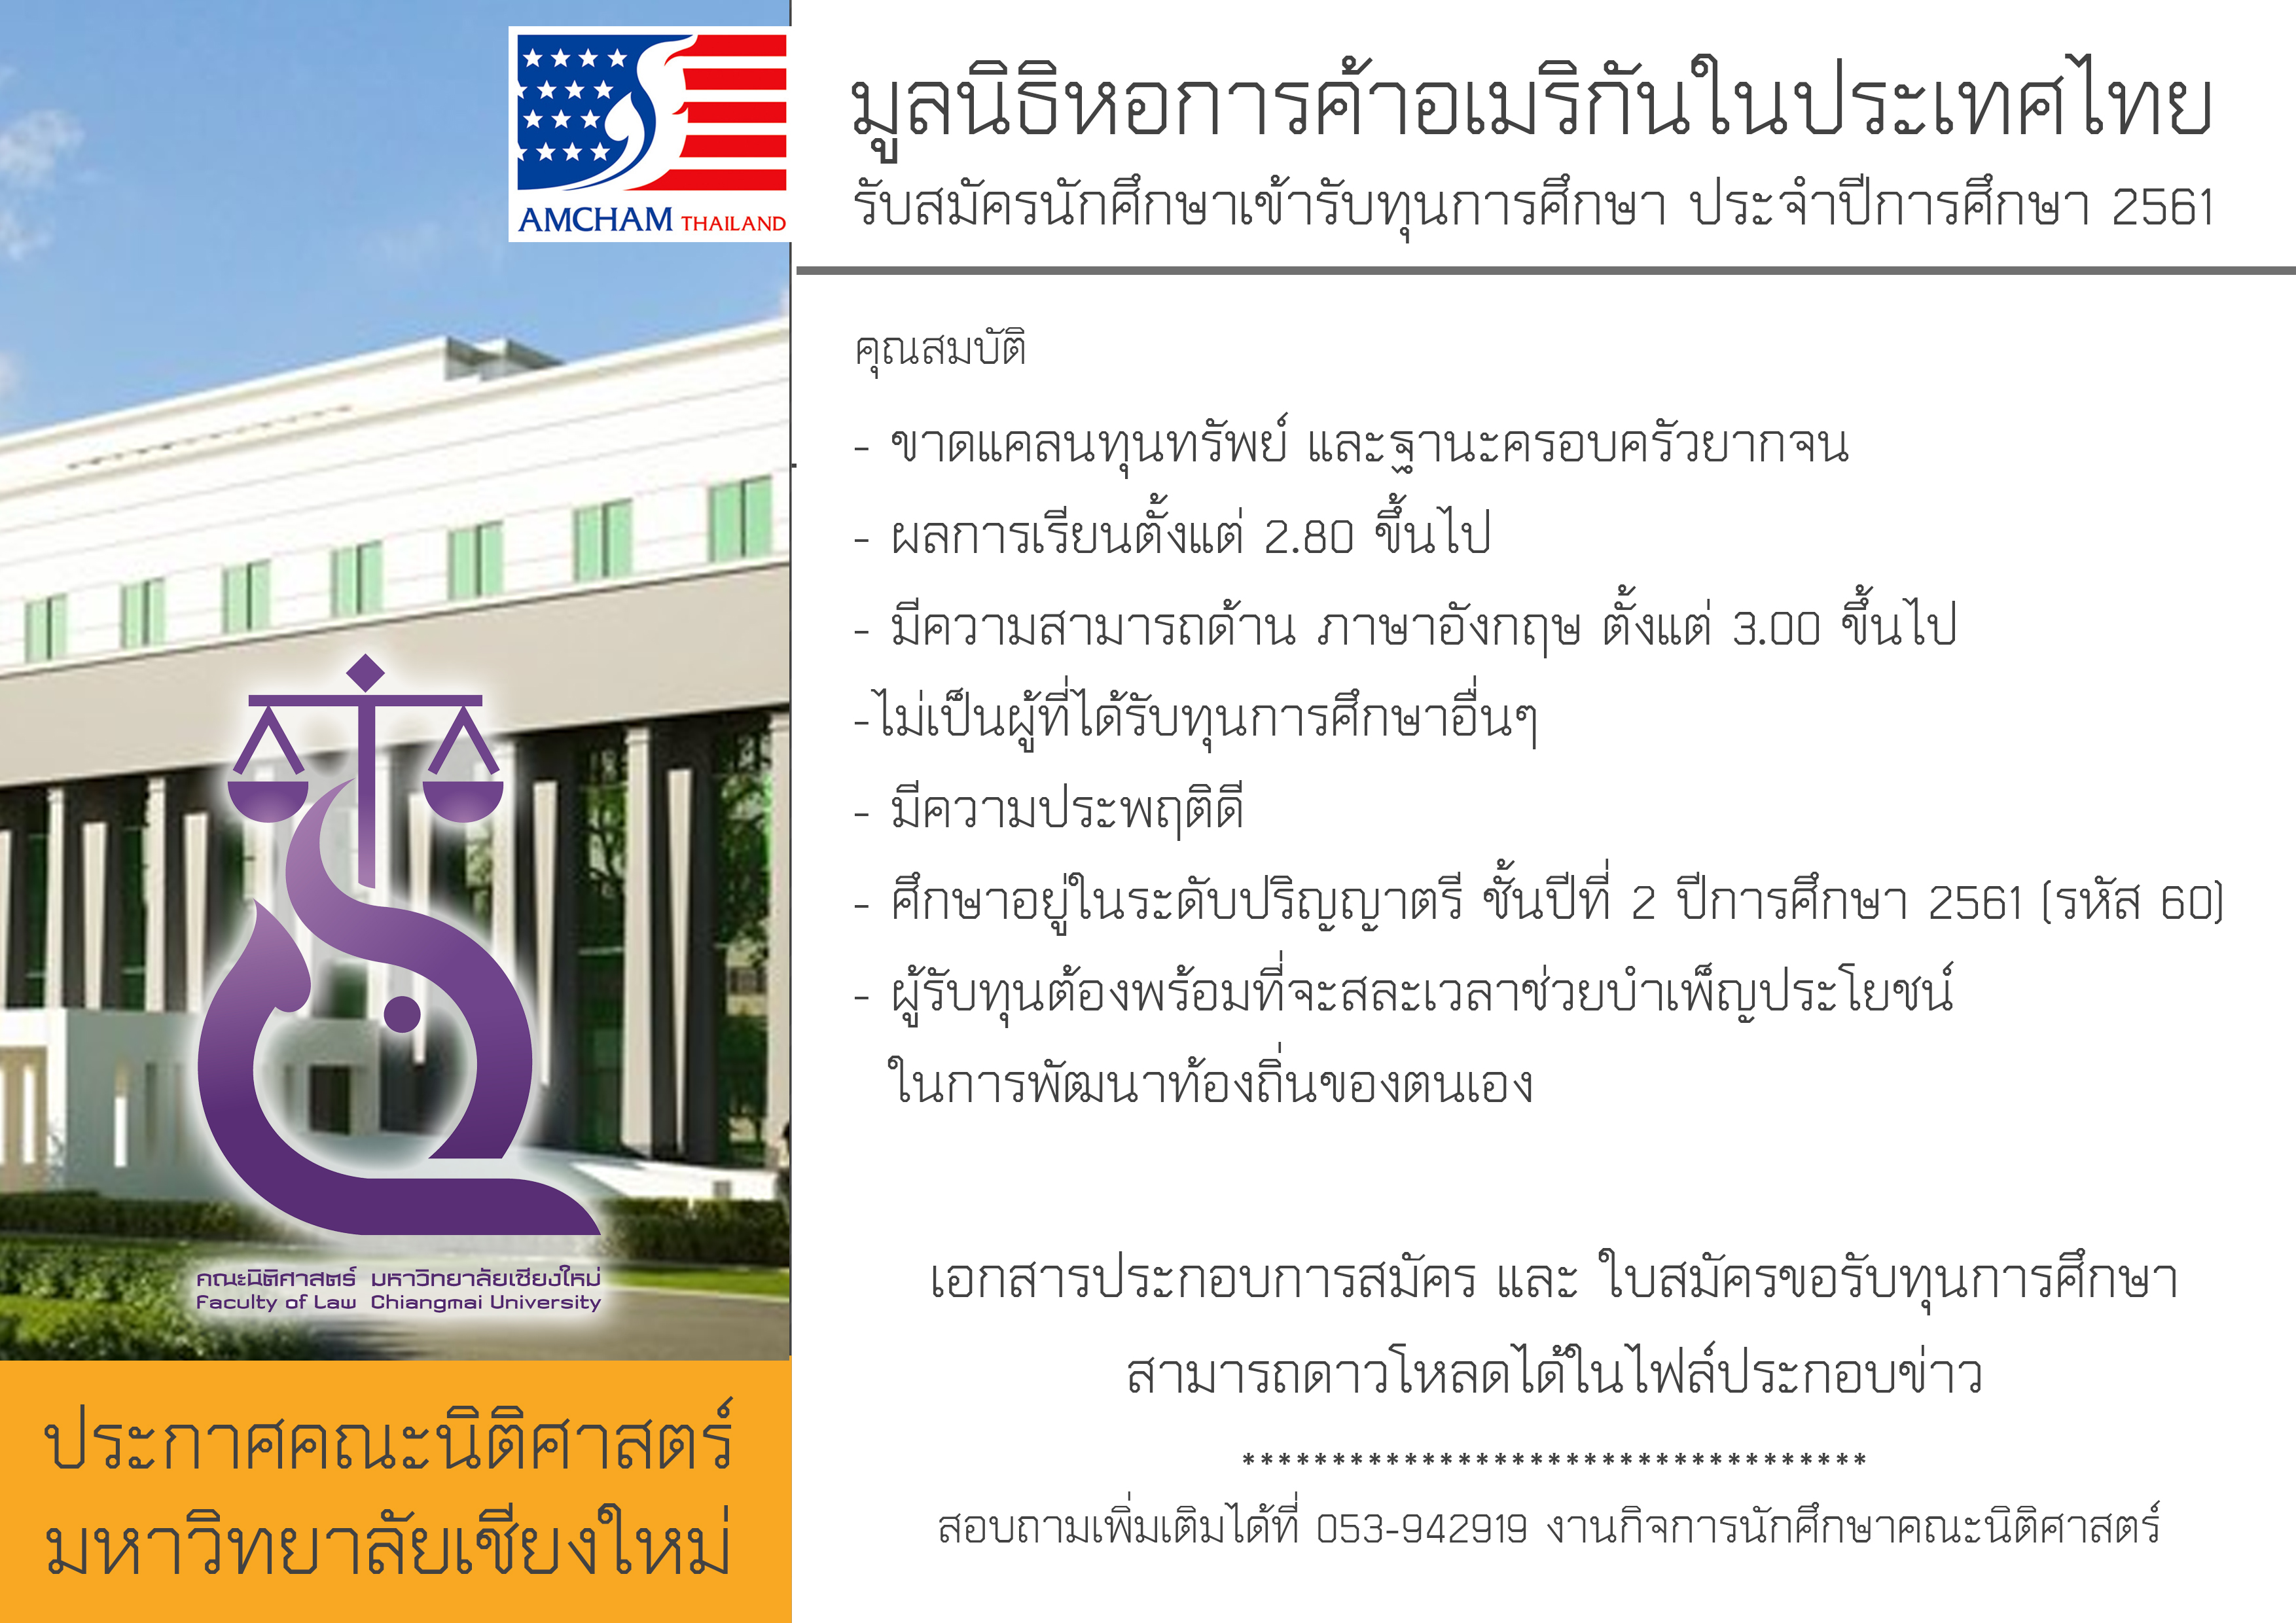 มูลนิธิหอการค้าอเมริกันในประเทศไทย รับสมัครนักศึกษาเข้ารับทุนการศึกษา ประจำปีการศึกษา 2561